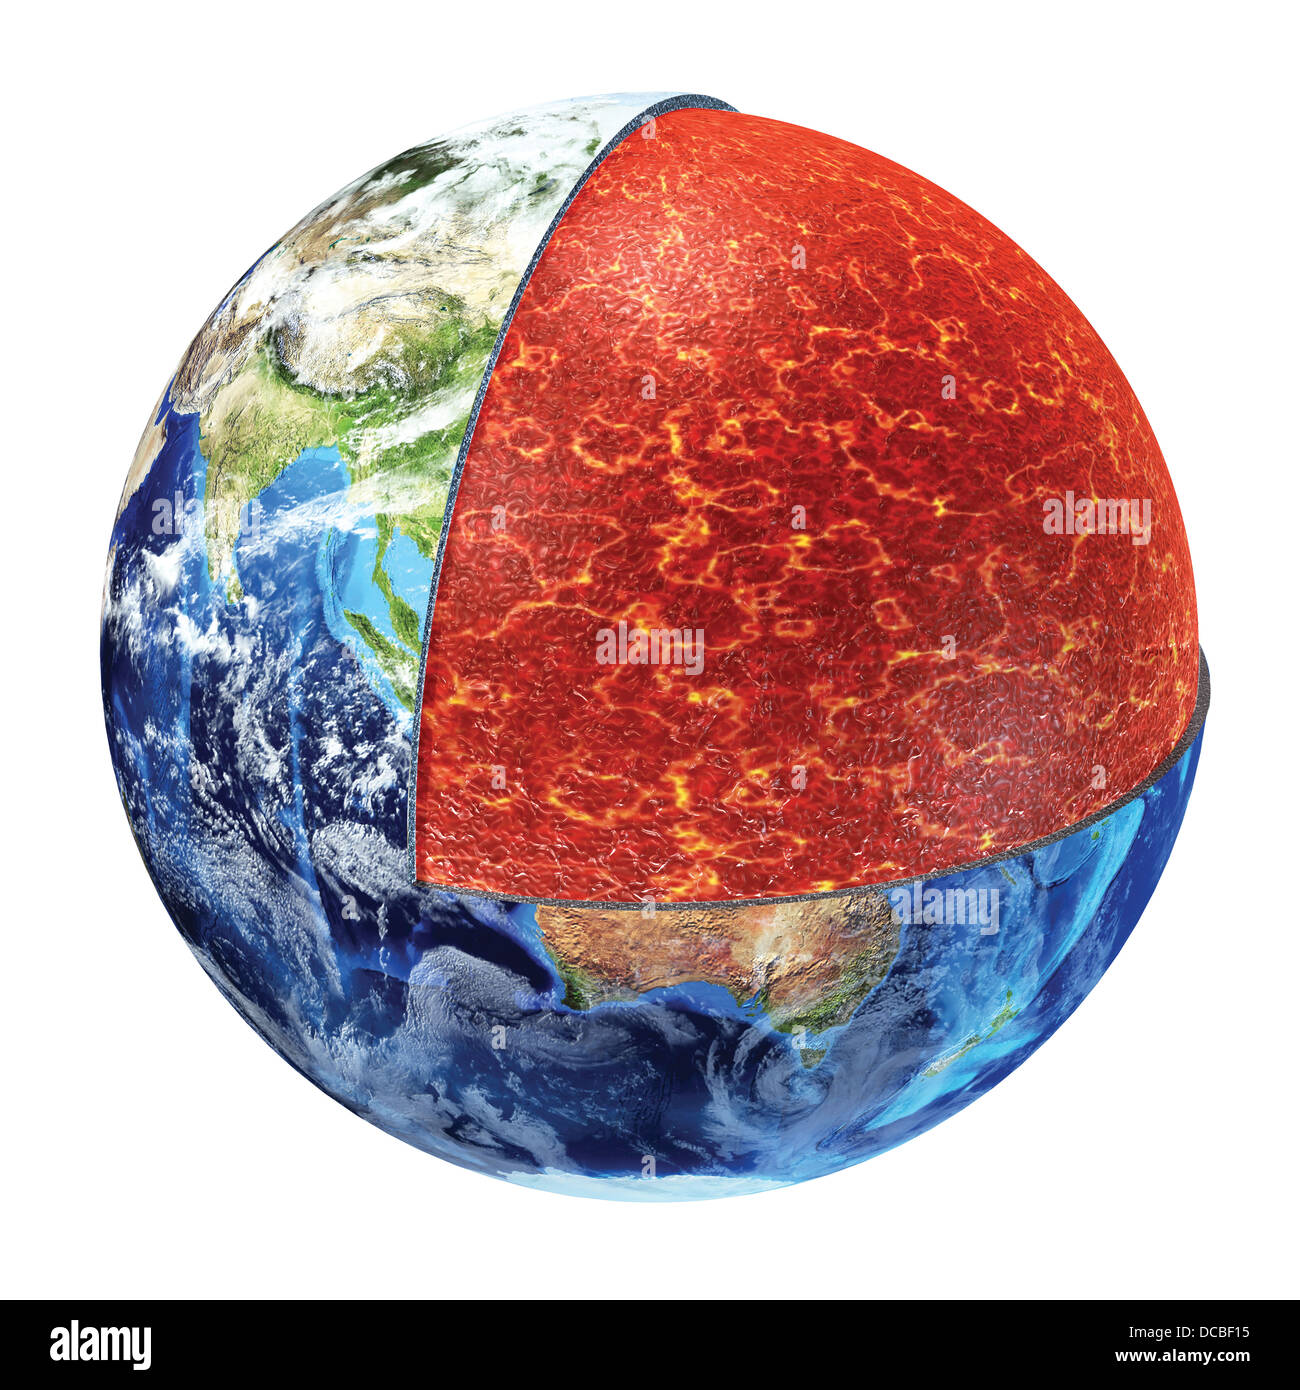 Querschnitt der Erde. Zeigt den oberen Mantel, gemacht von Kunststoff Magnesium, Eisen, Aluminium, Silizium und Sauerstoff. 700-1300° C. Stockfoto